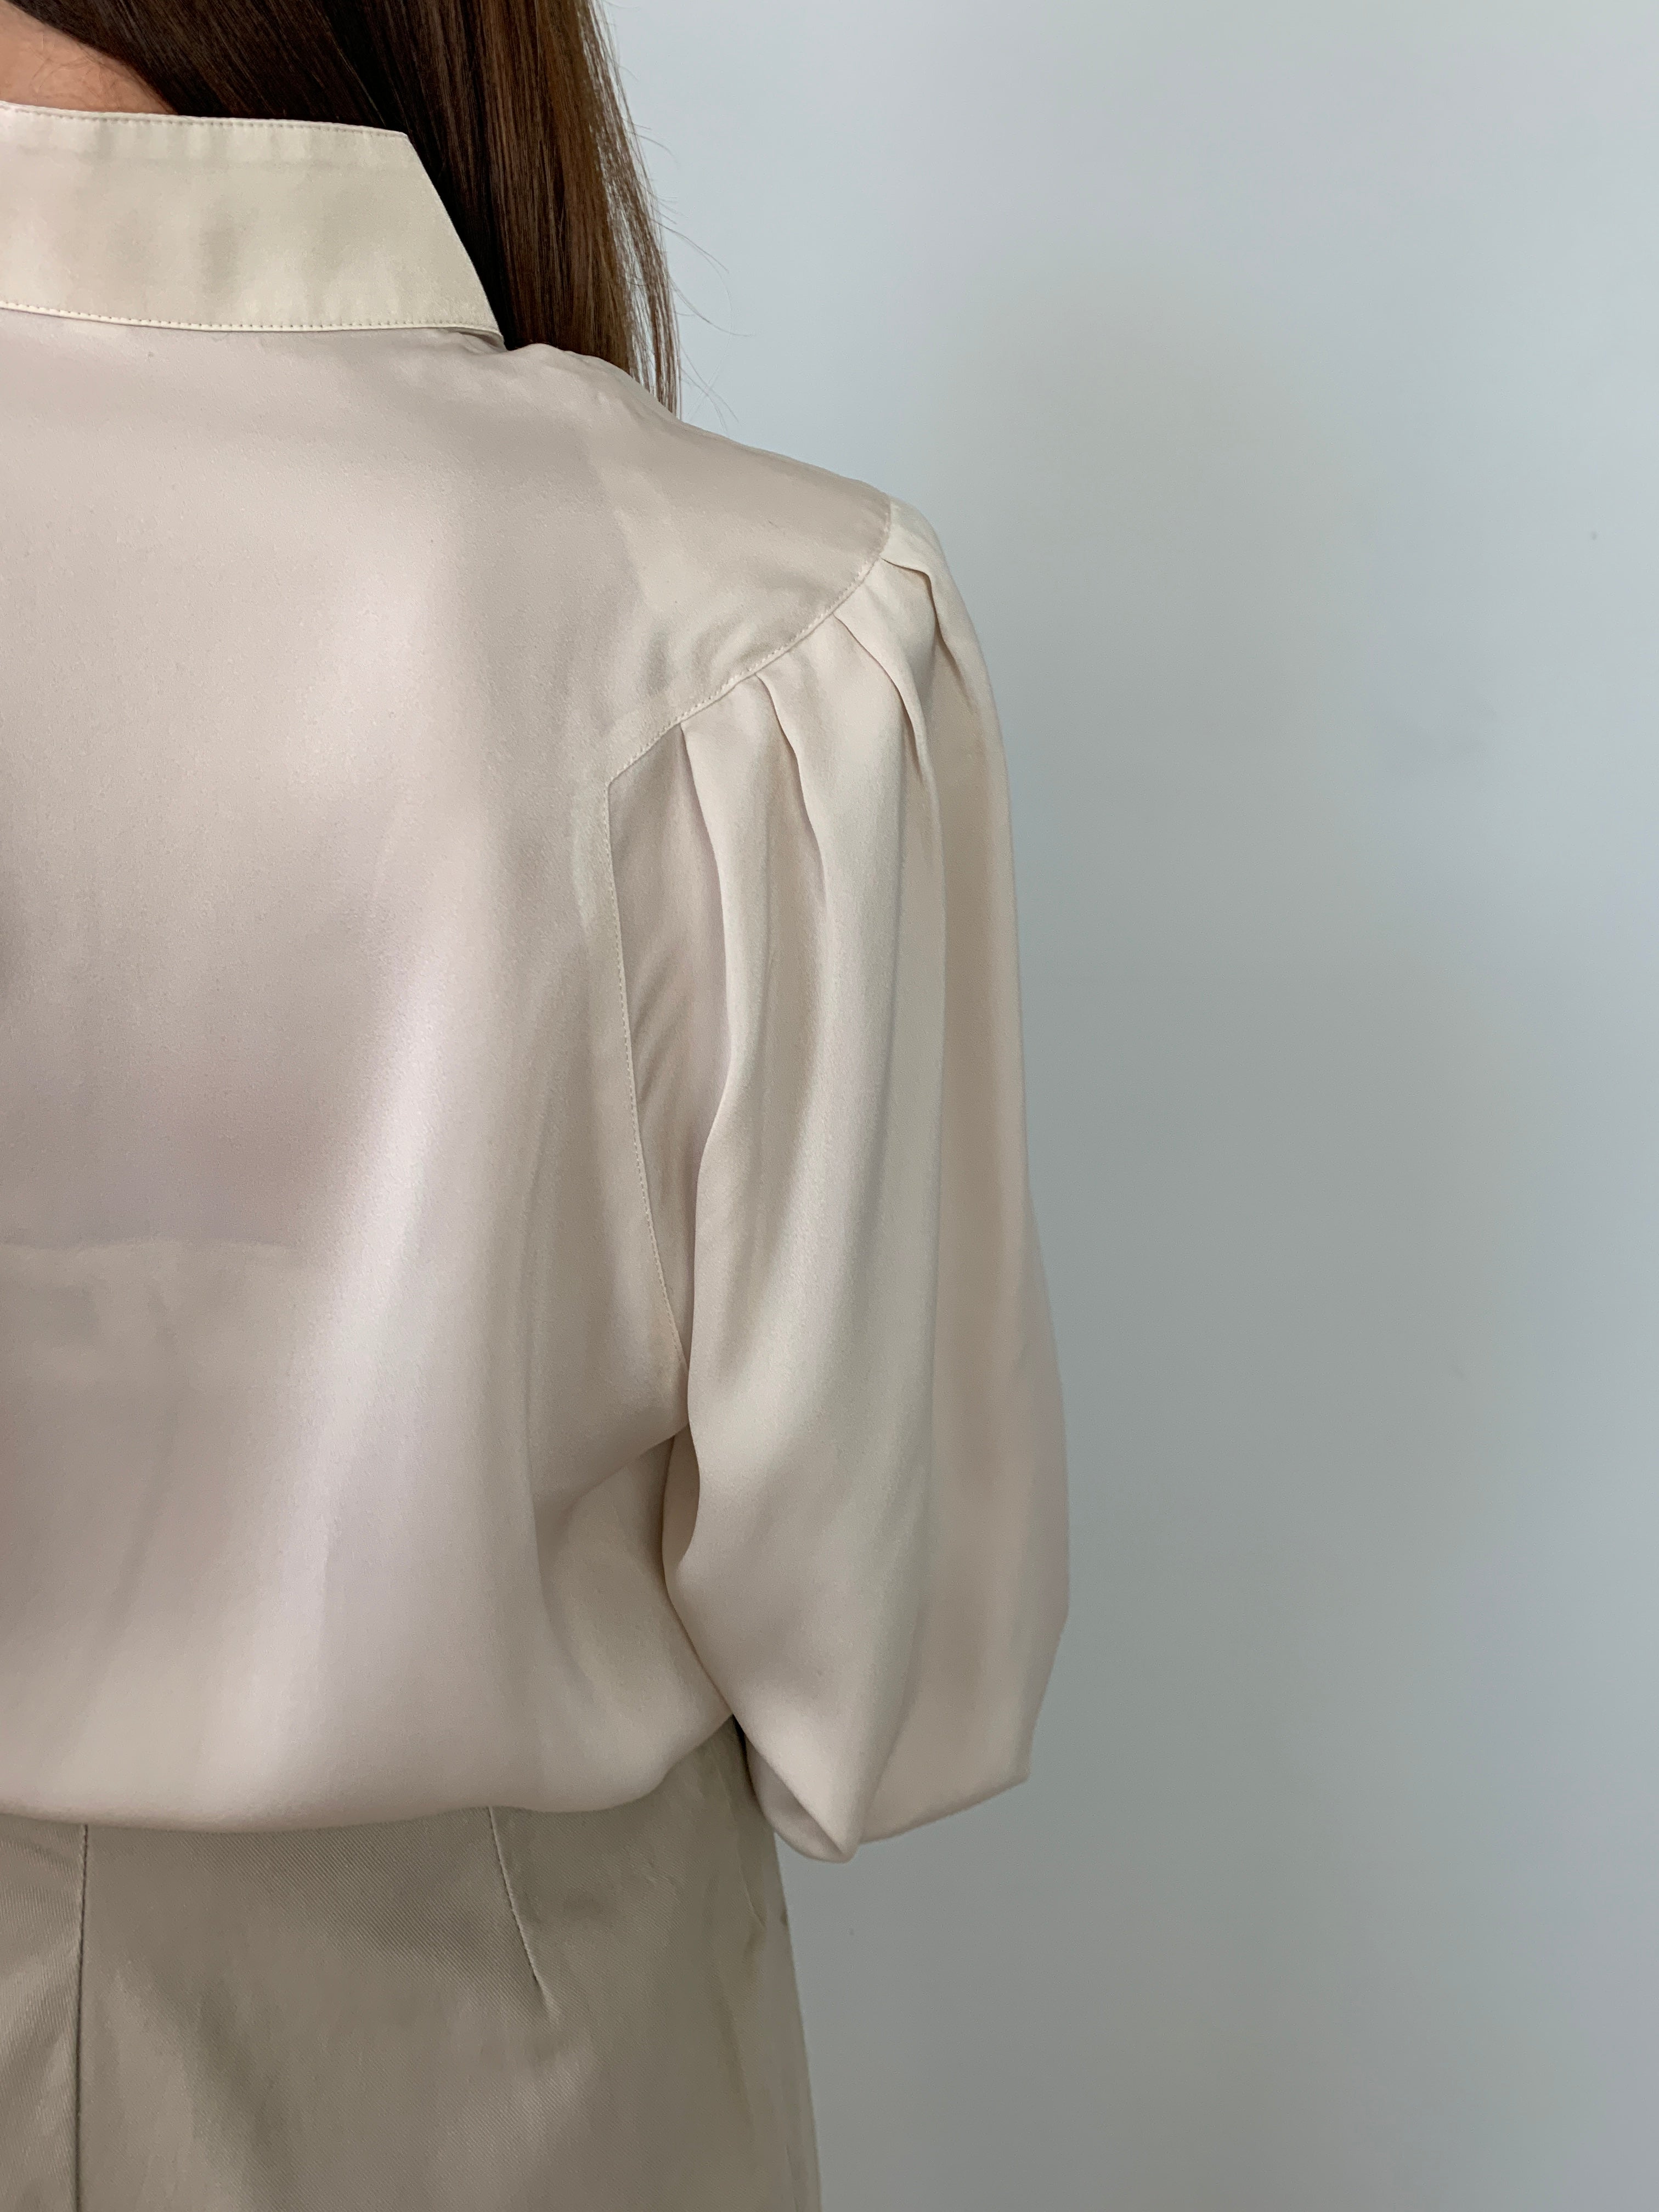 Stokin silk vintage blouse with shoulder details